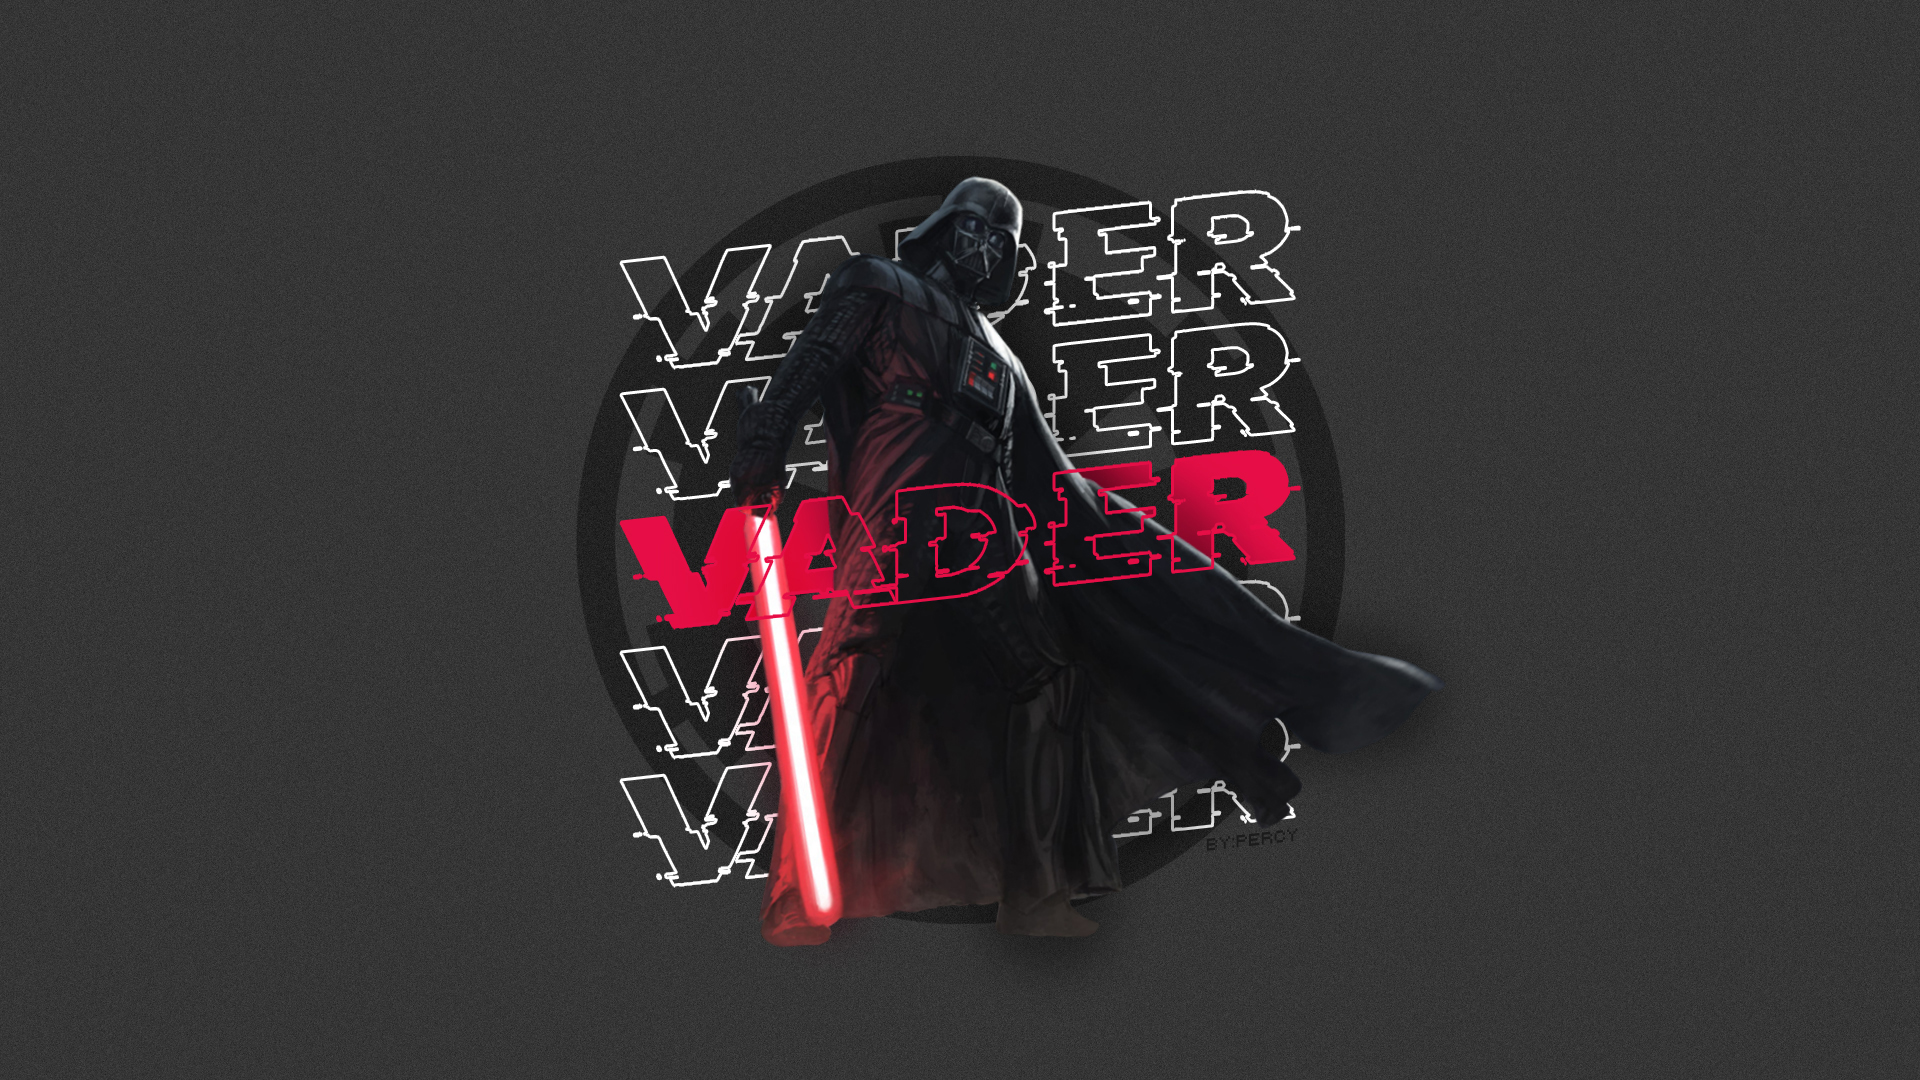 General 1920x1080 Darth Vader Star Wars Galactic Empire lightsaber